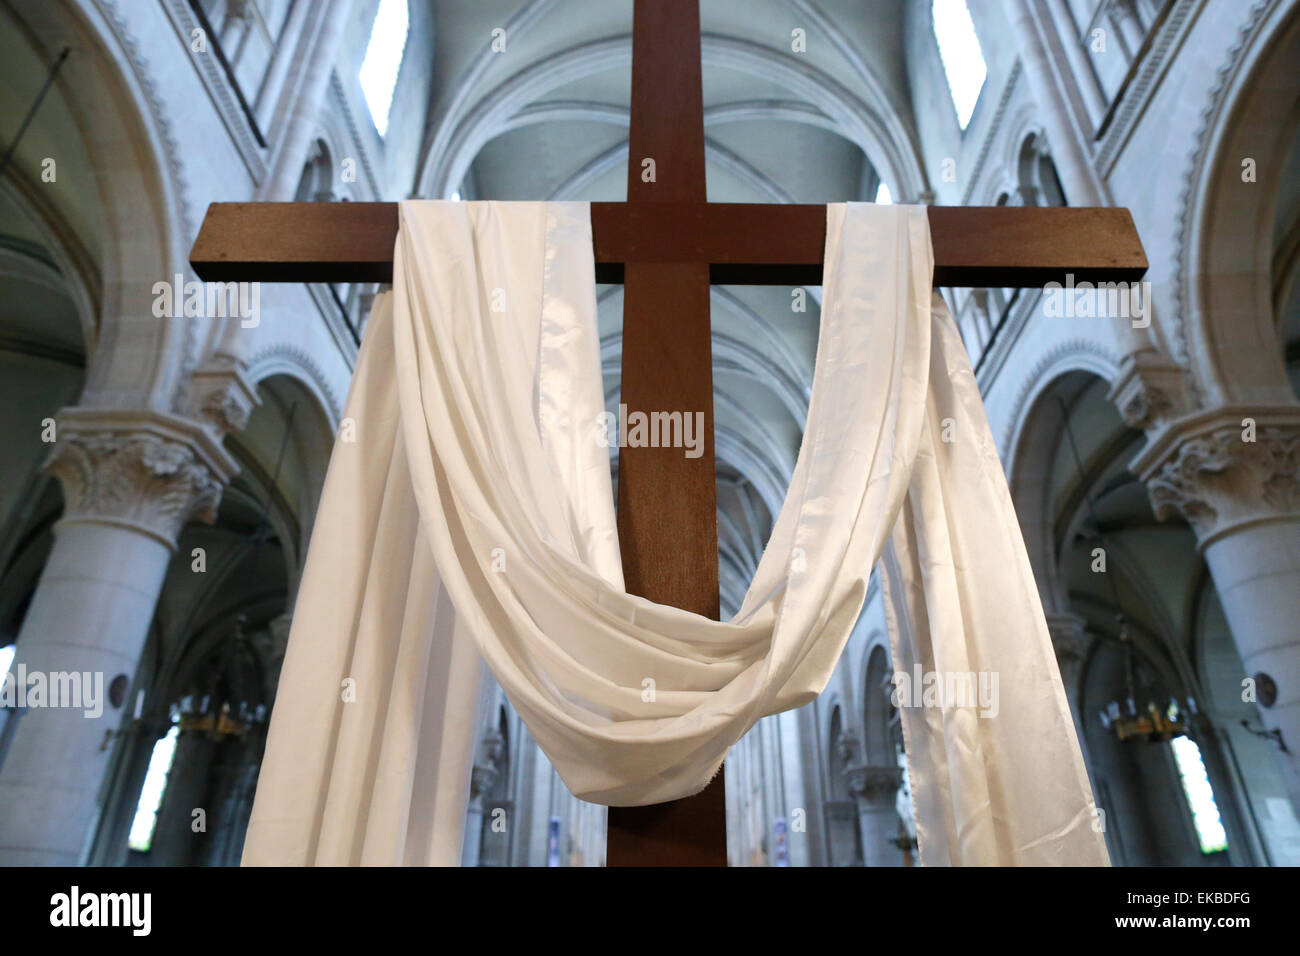 Das Kreuz und das weiße Tuch symbolisiert die Auferstehung von Jesus,  Karwoche, St. Ambroise Kirche, Paris, Frankreich, Europa Stockfotografie -  Alamy